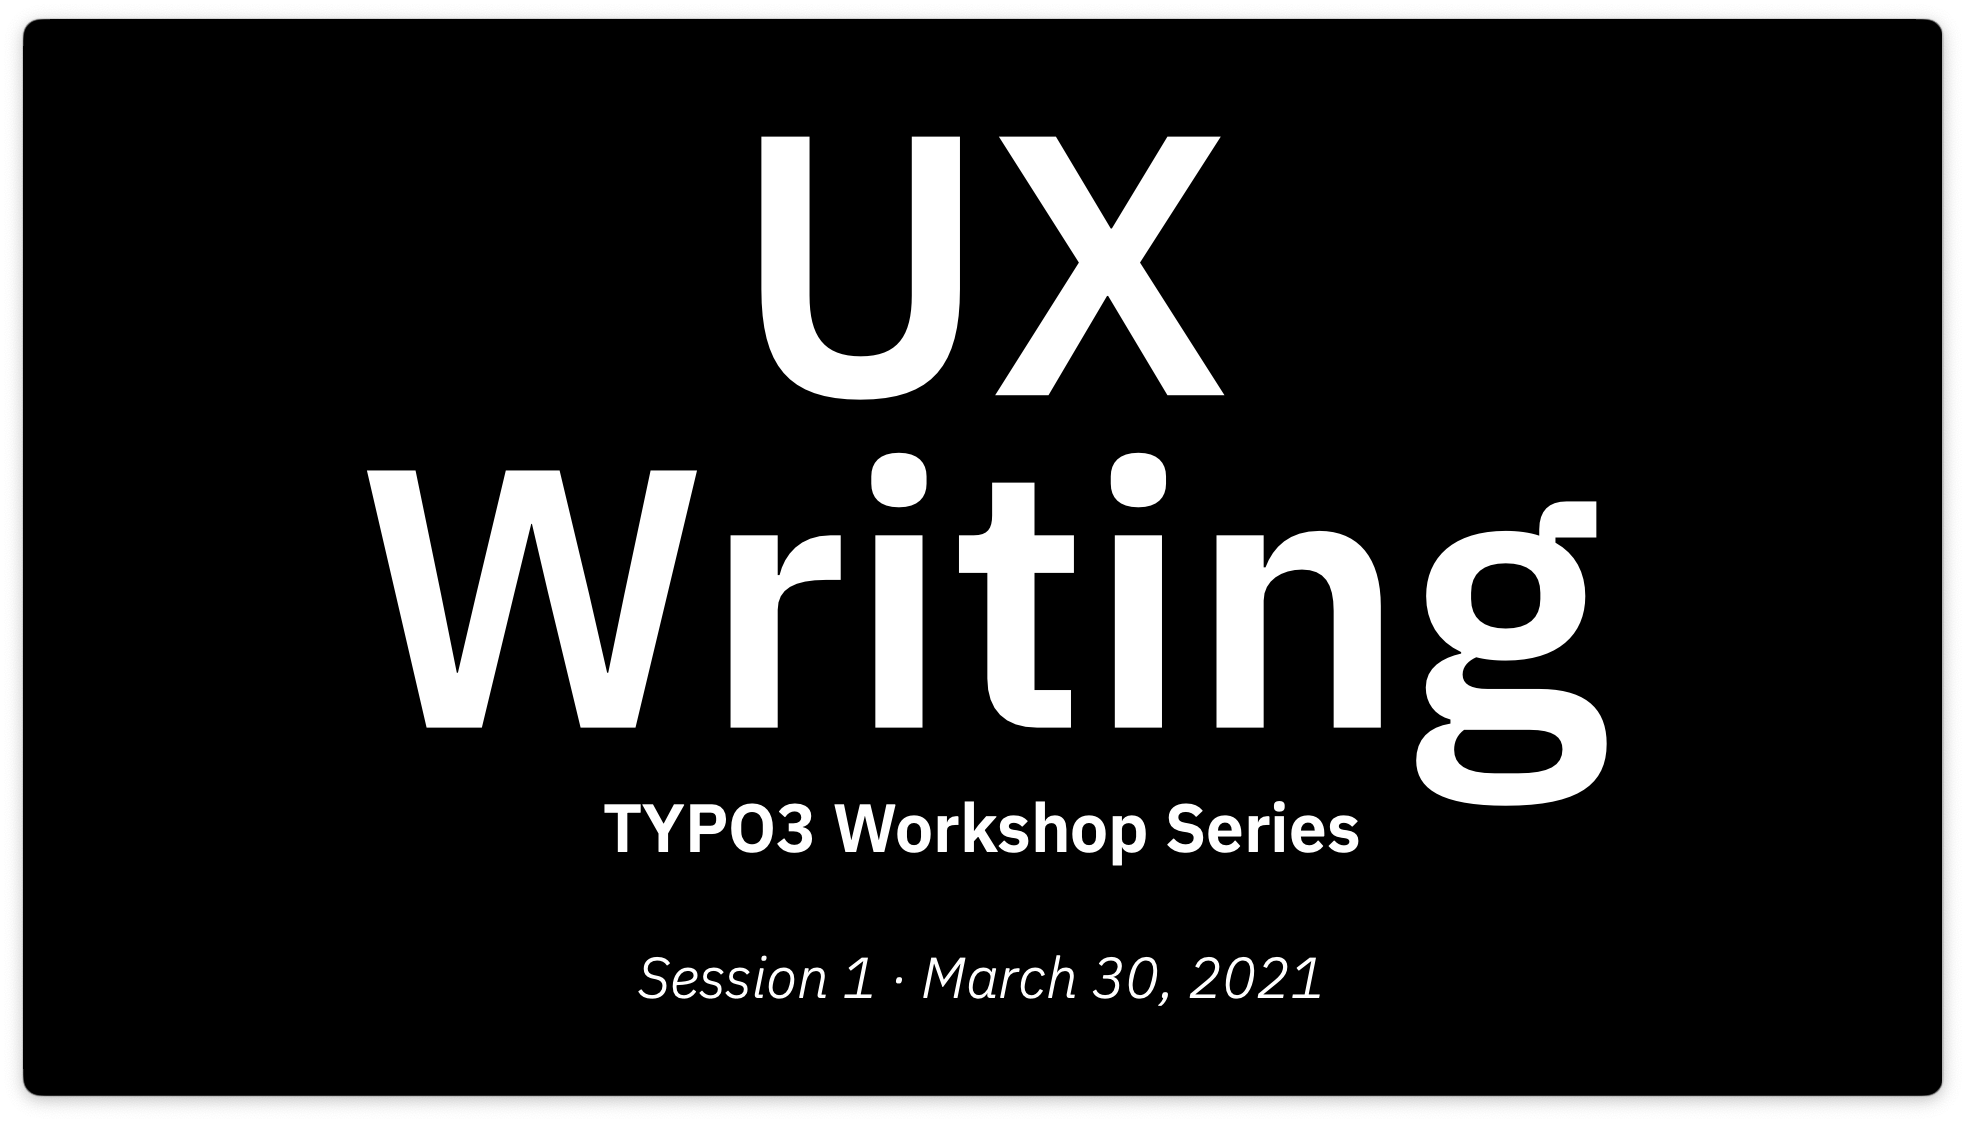 TYPO3 UX Writing workshop series